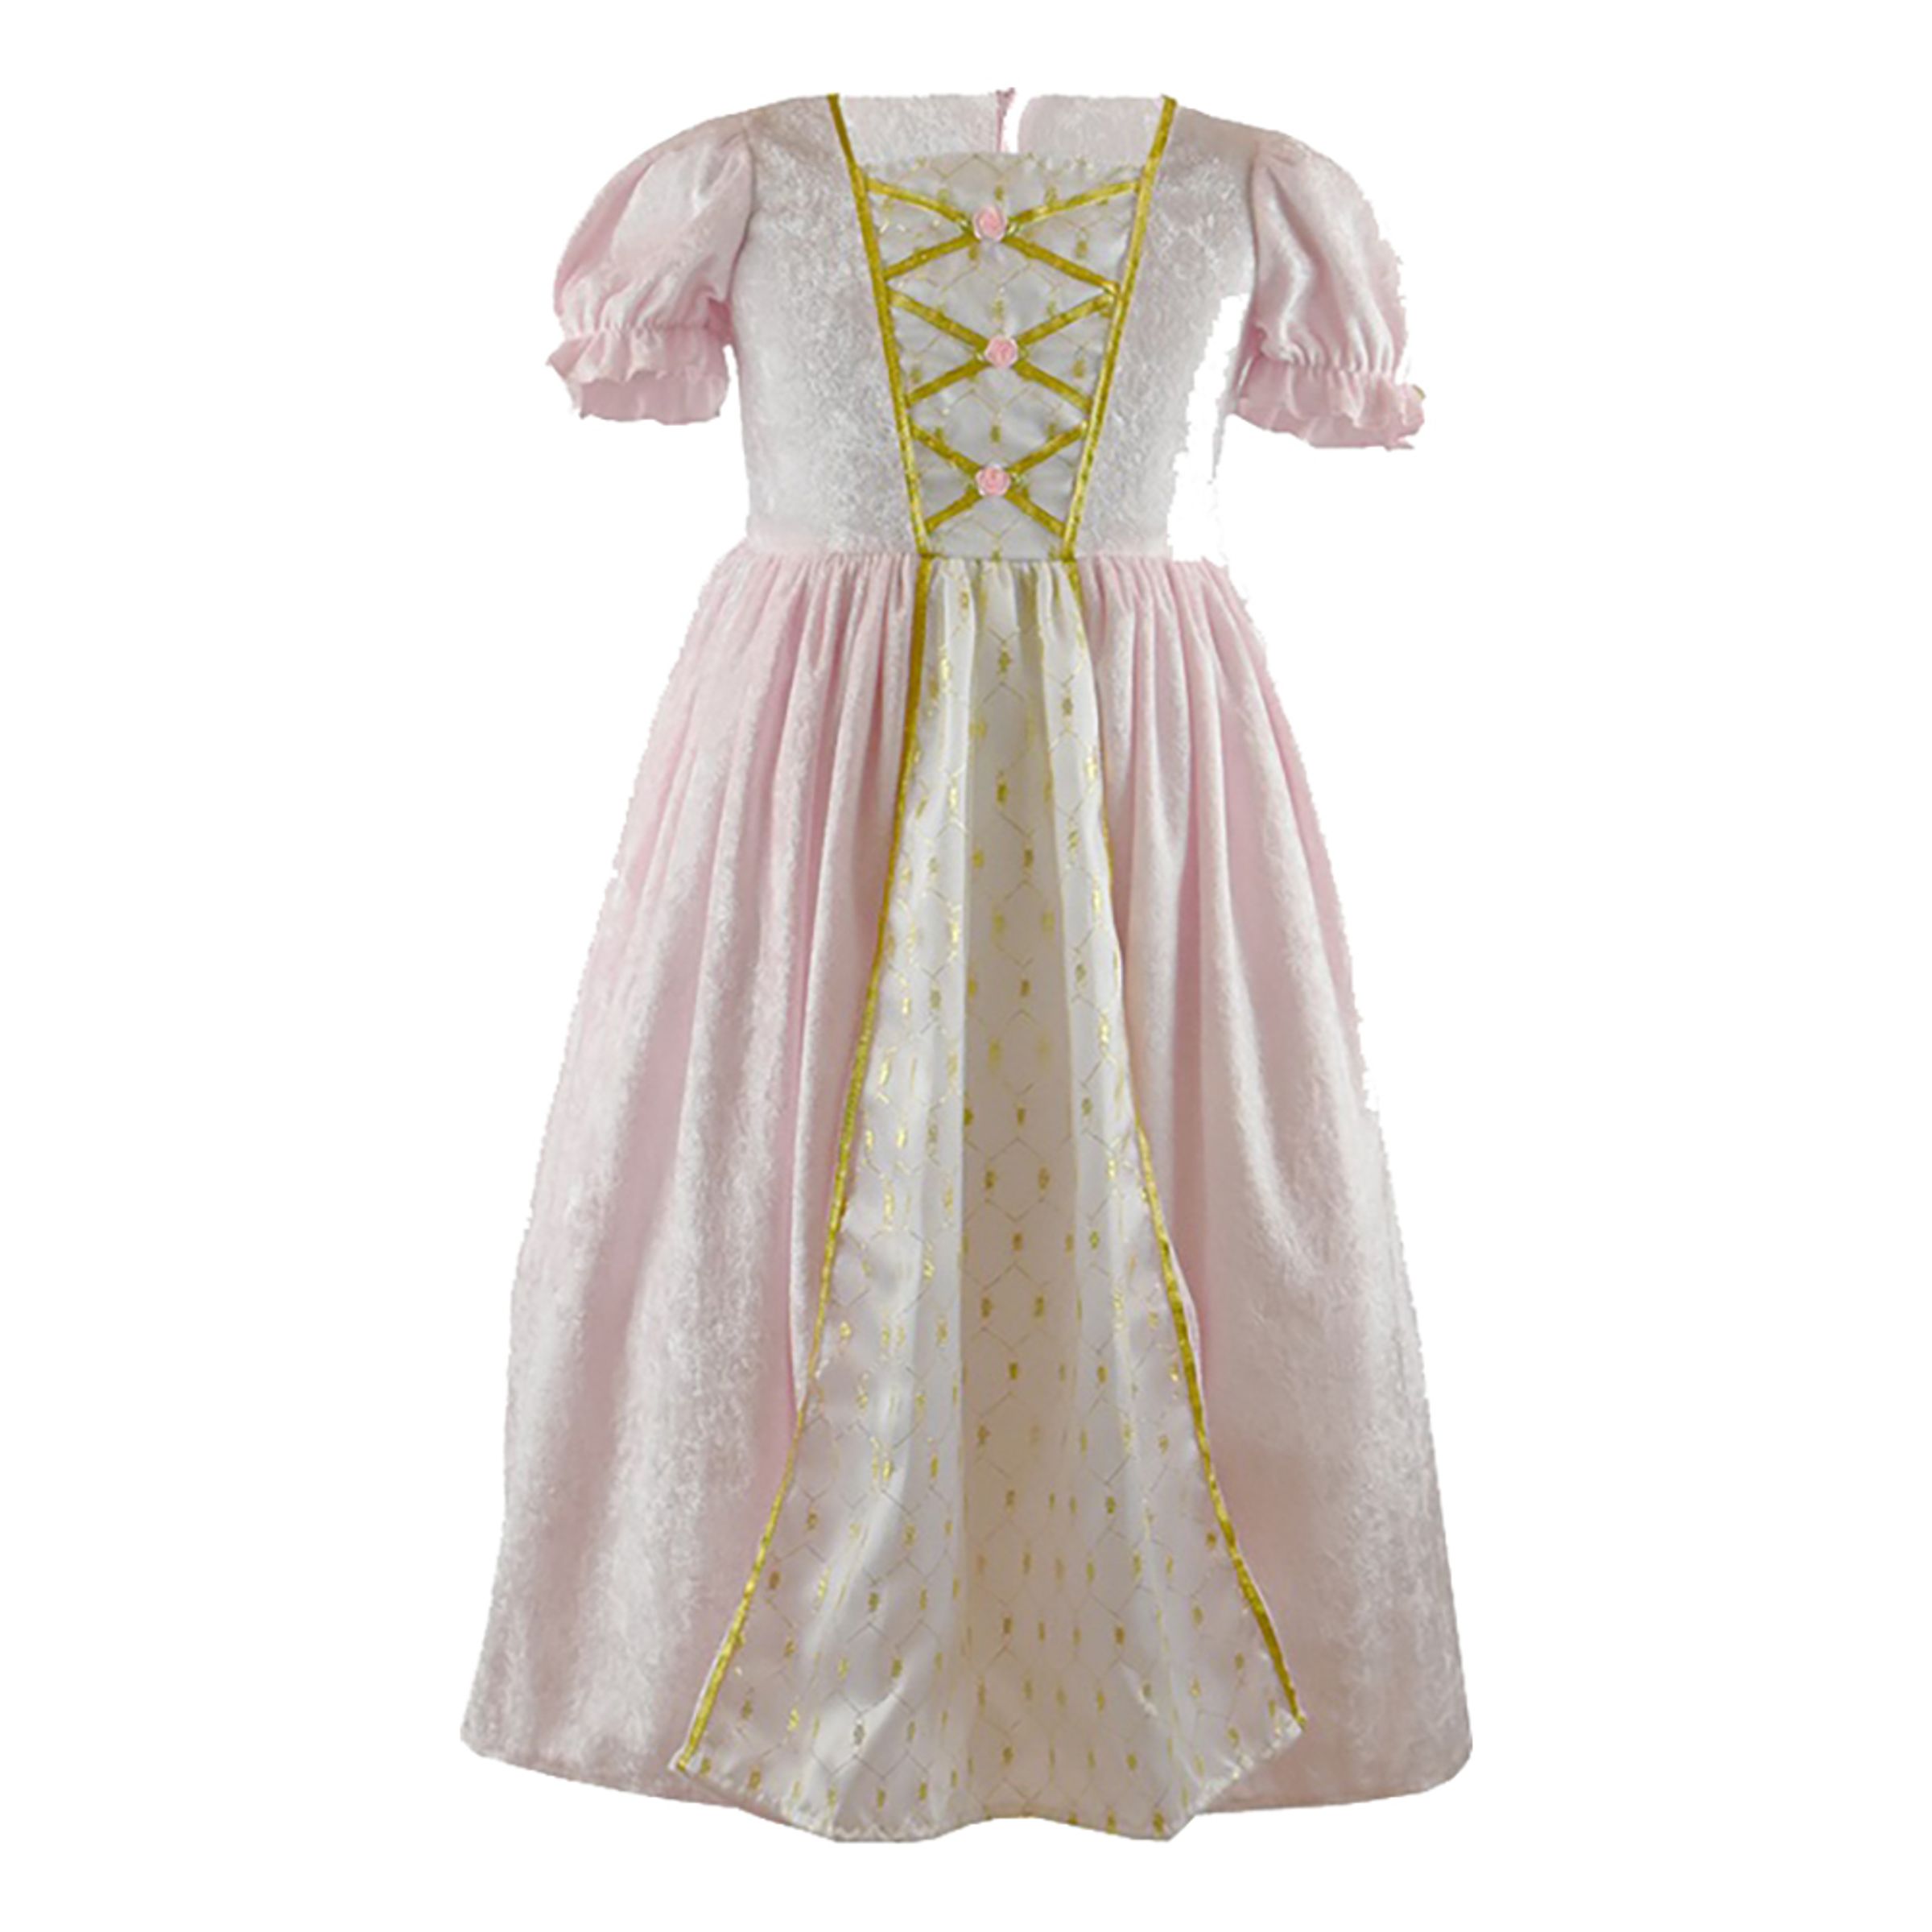 Prinsessklänning Sammetsrosa Barn - Medium